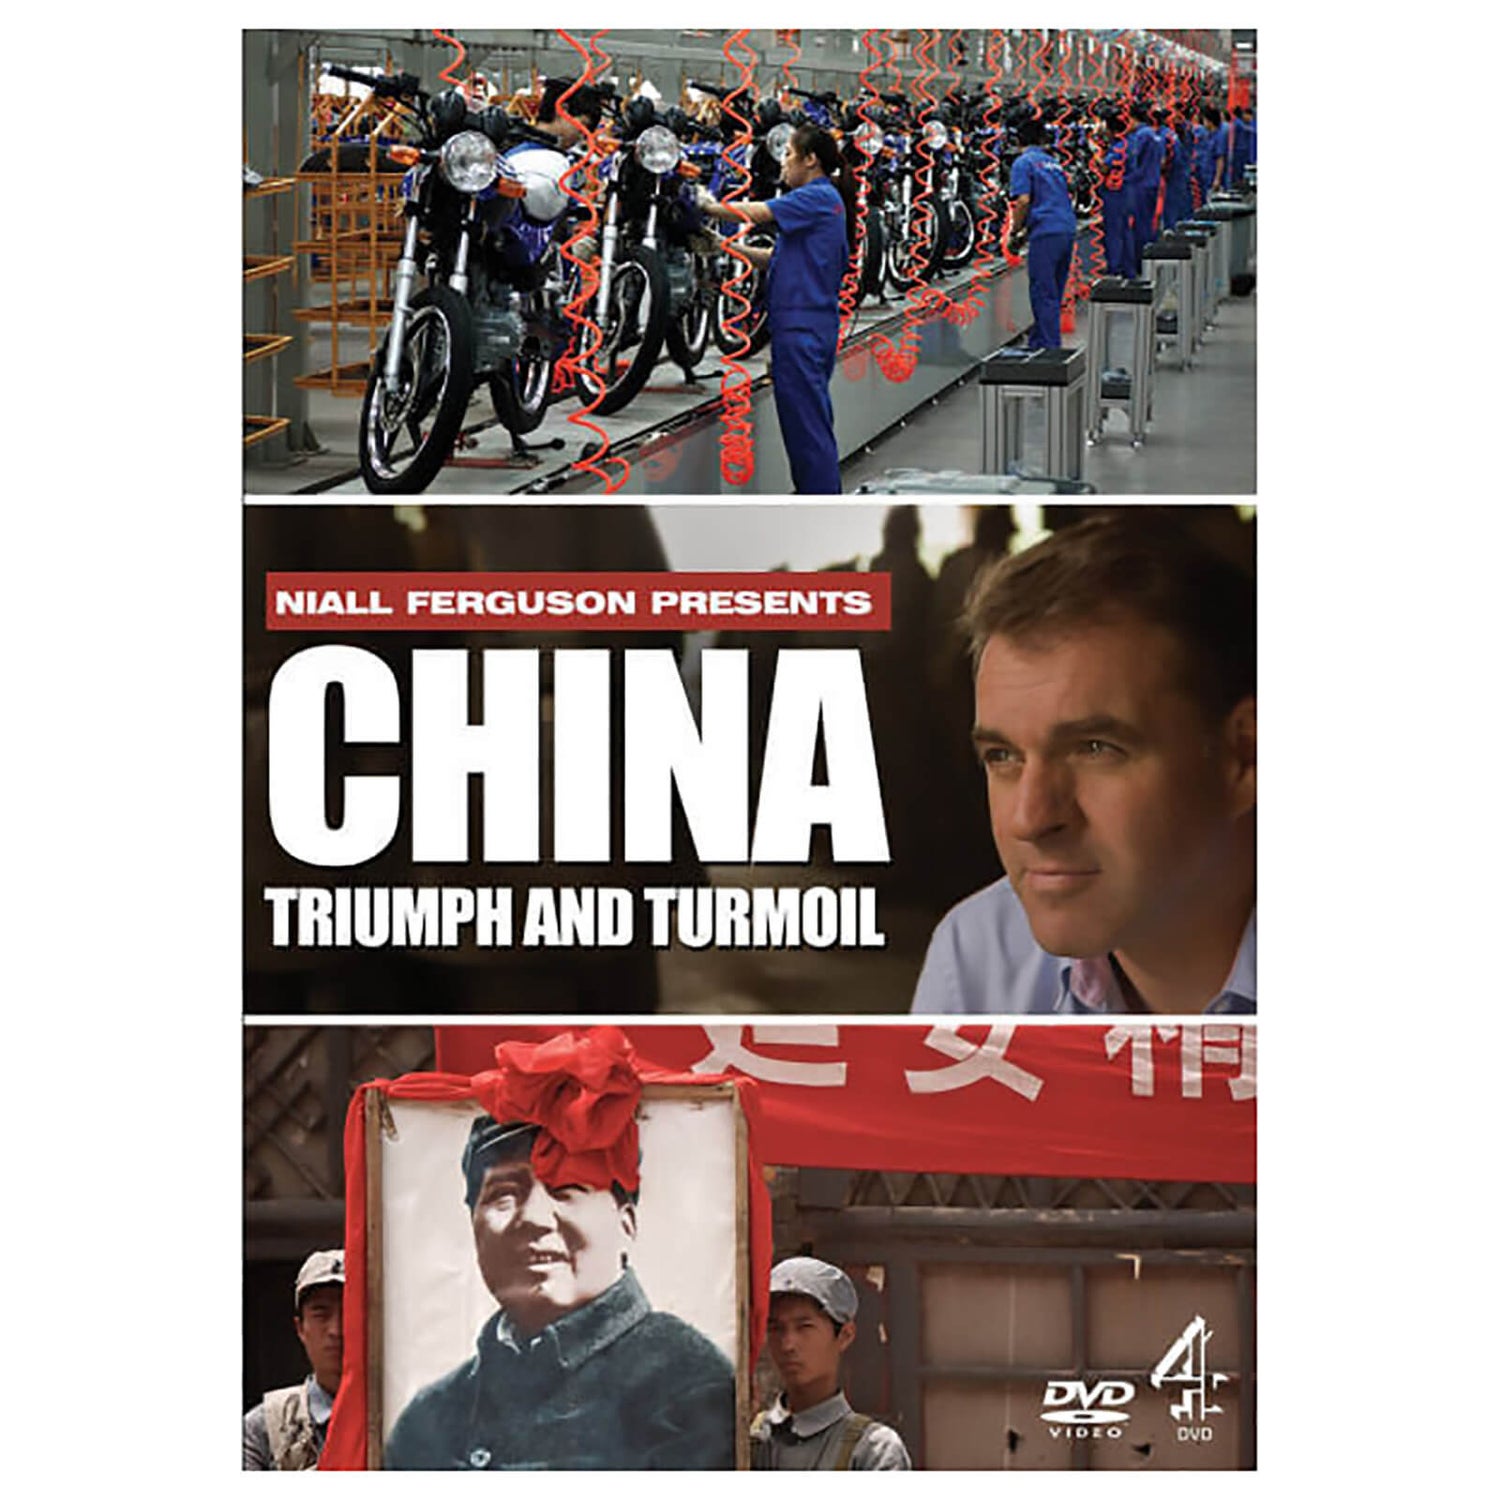 China: Triumph and Turmoil